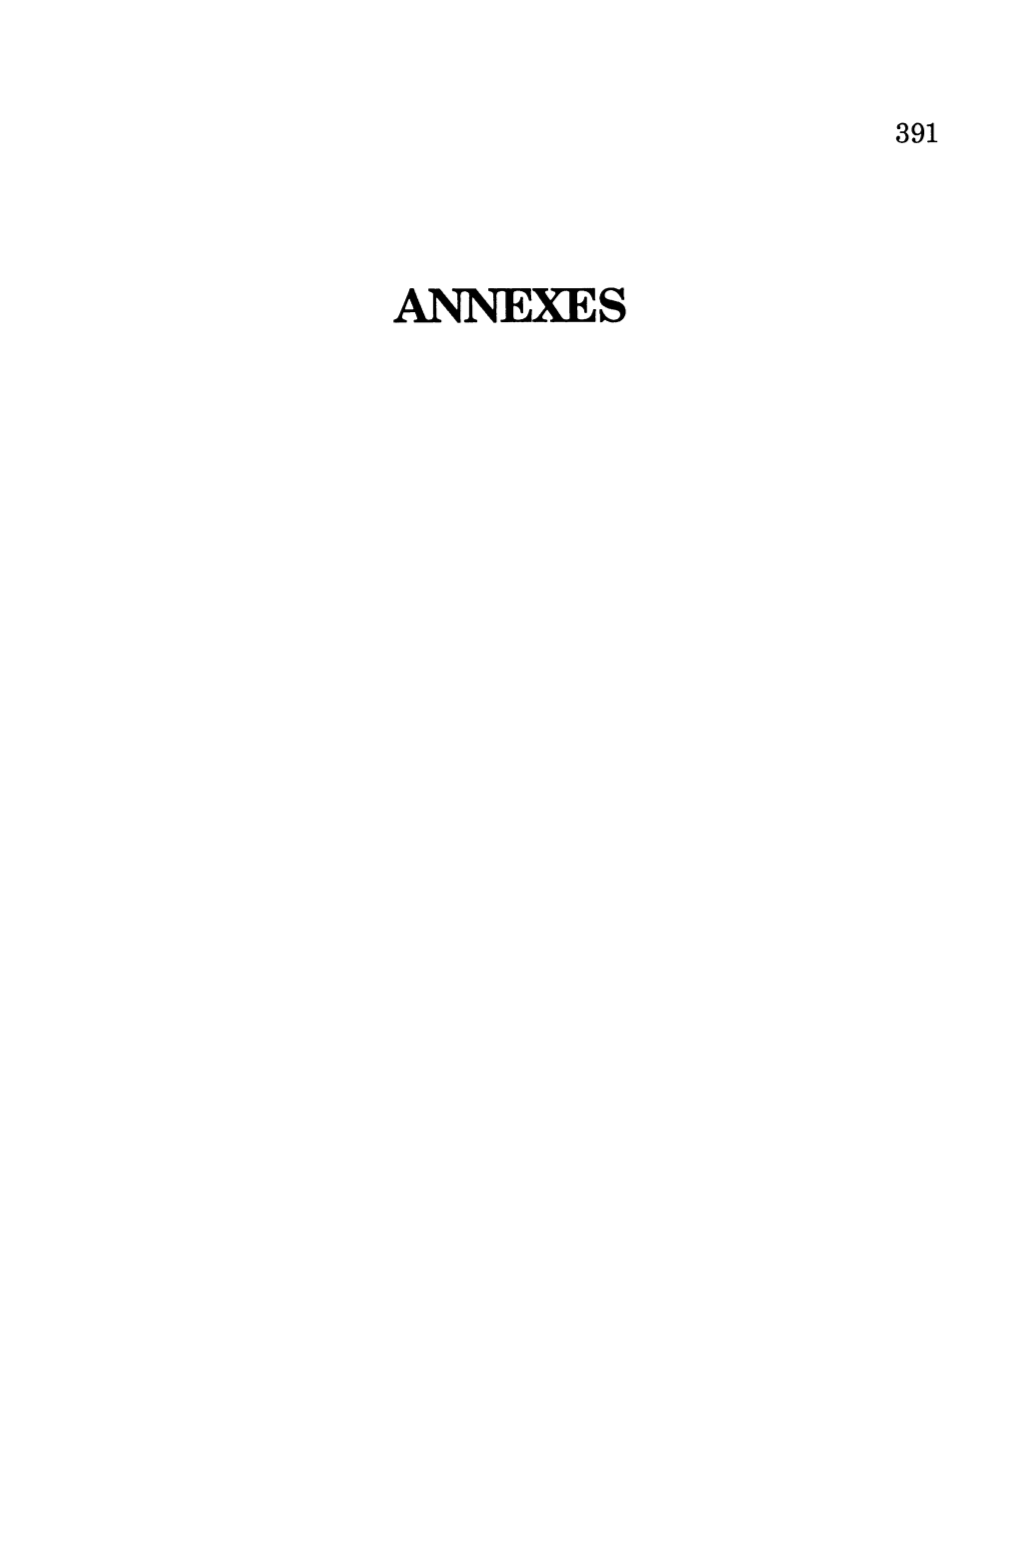 ANNEXES 393 Annexl